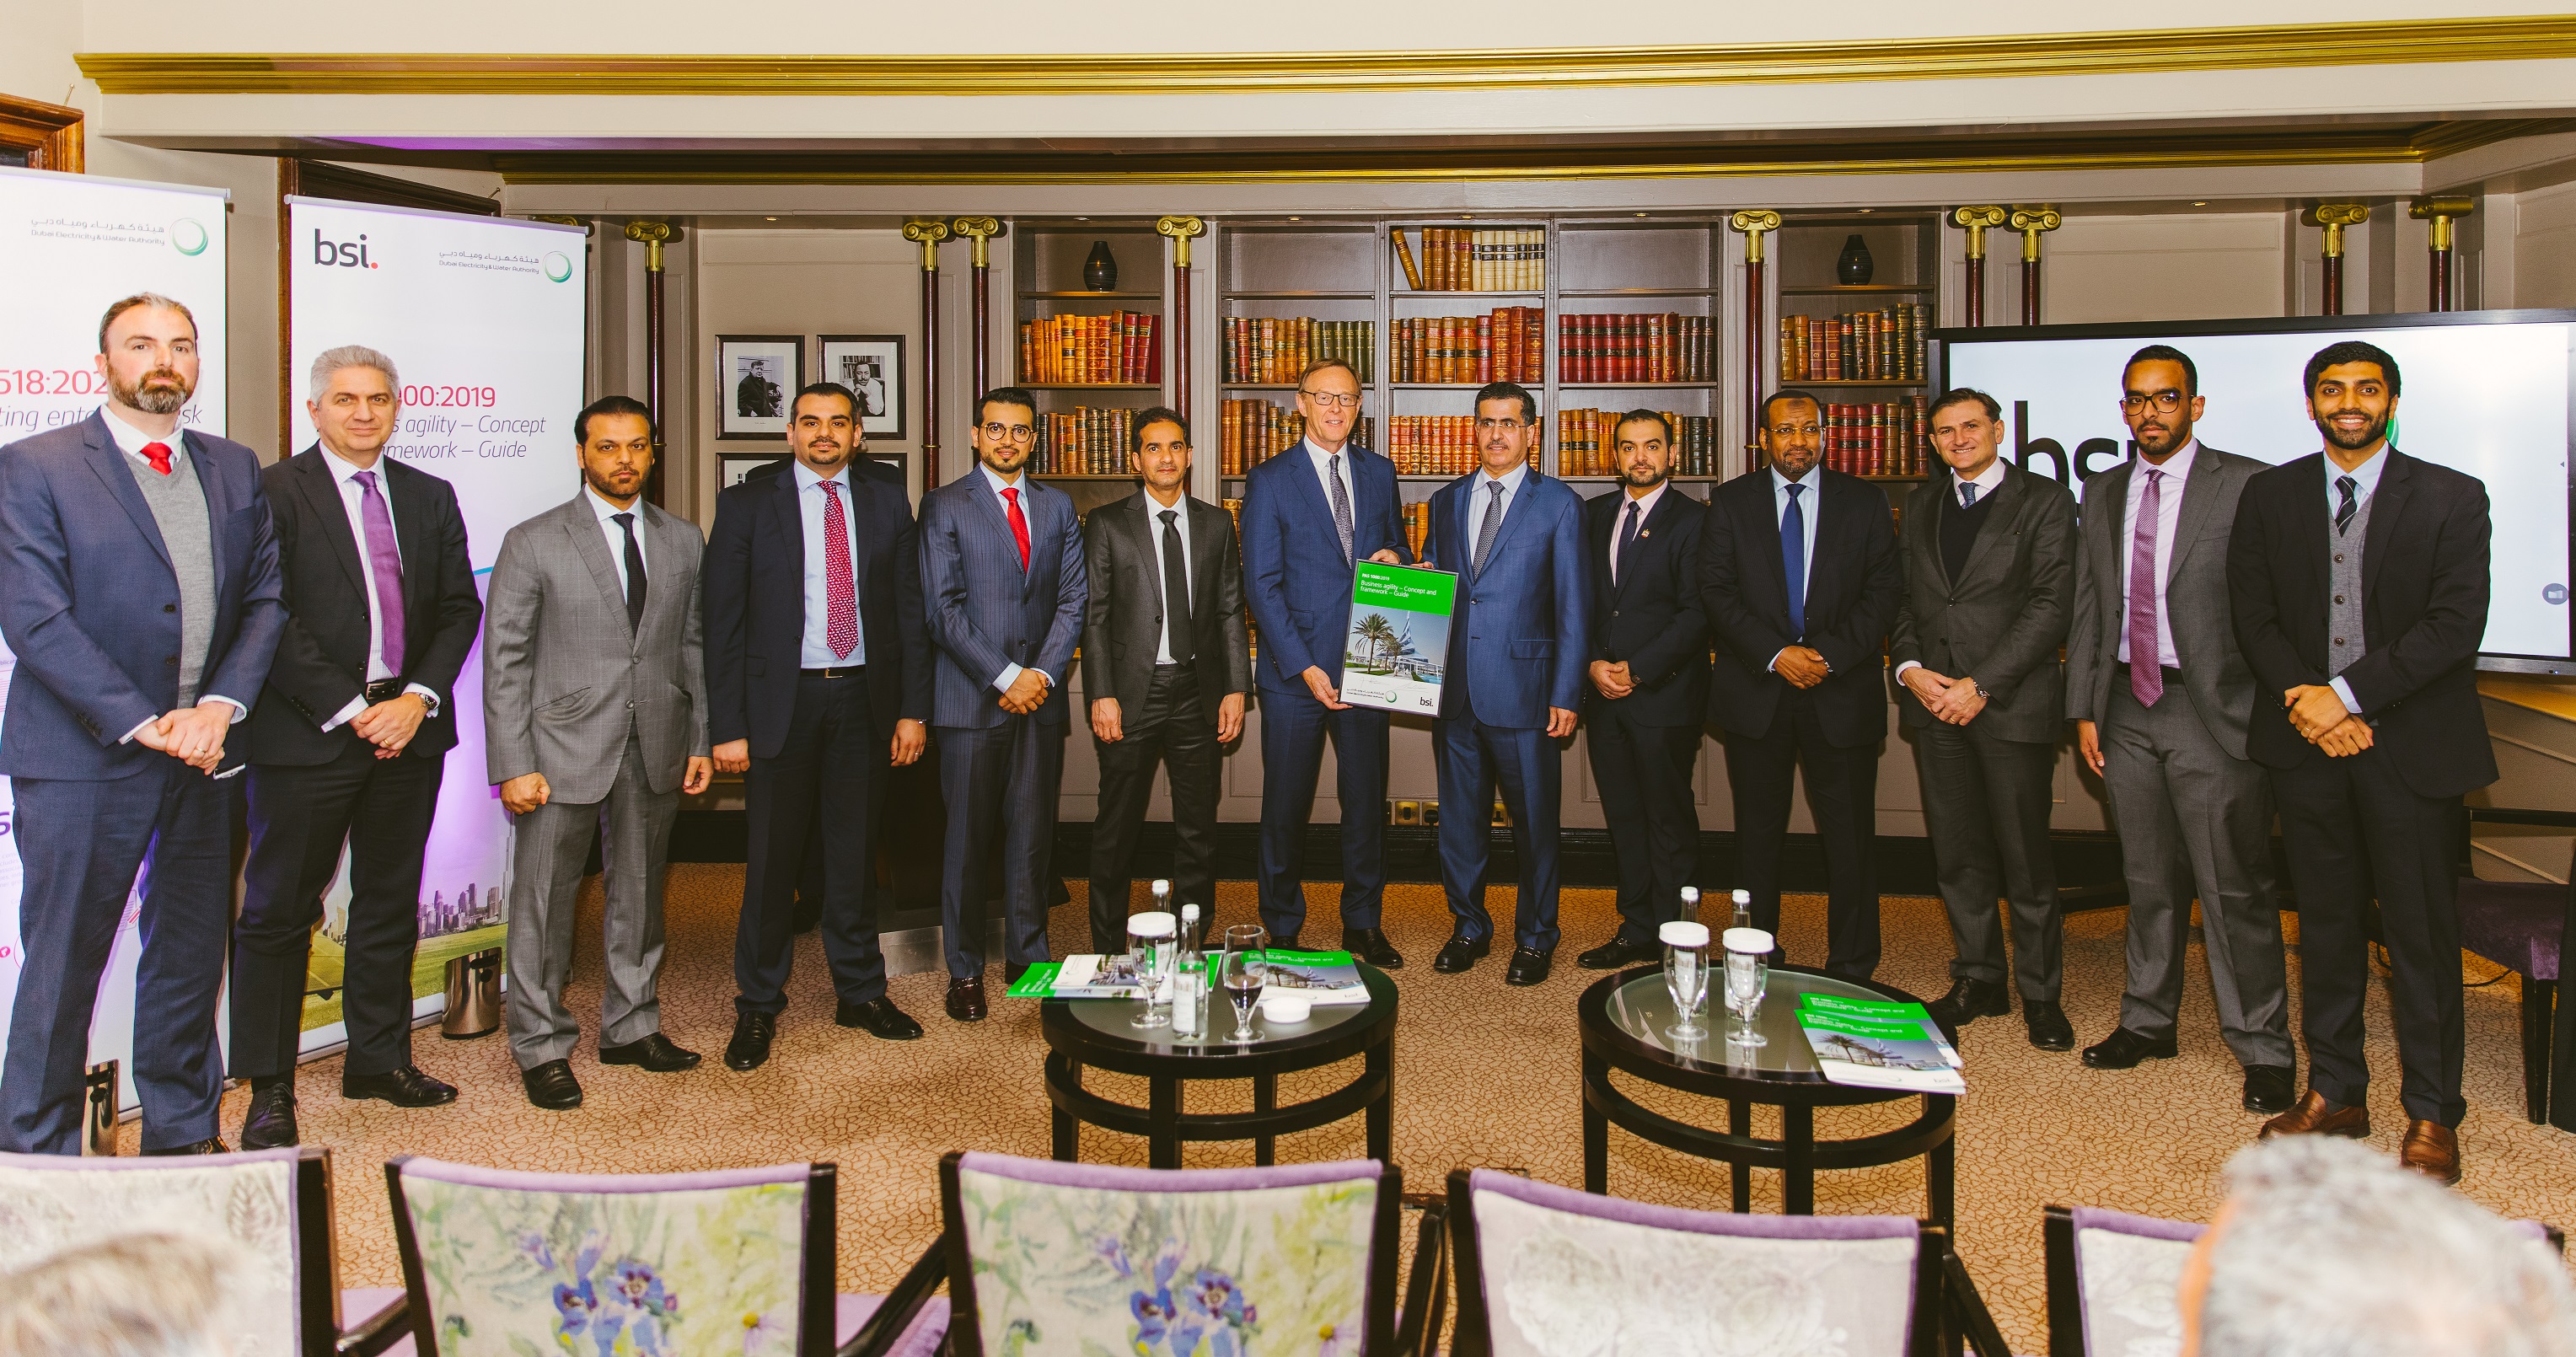 هيئة كهرباء ومياه دبي تطلق أول معيار مؤسسي عالمي لرشاقة الأعمال وتطور أول معيار من نوعه في العالم لإدارة المخاطر في قطاع الطاقة والمؤسسات الخدماتية